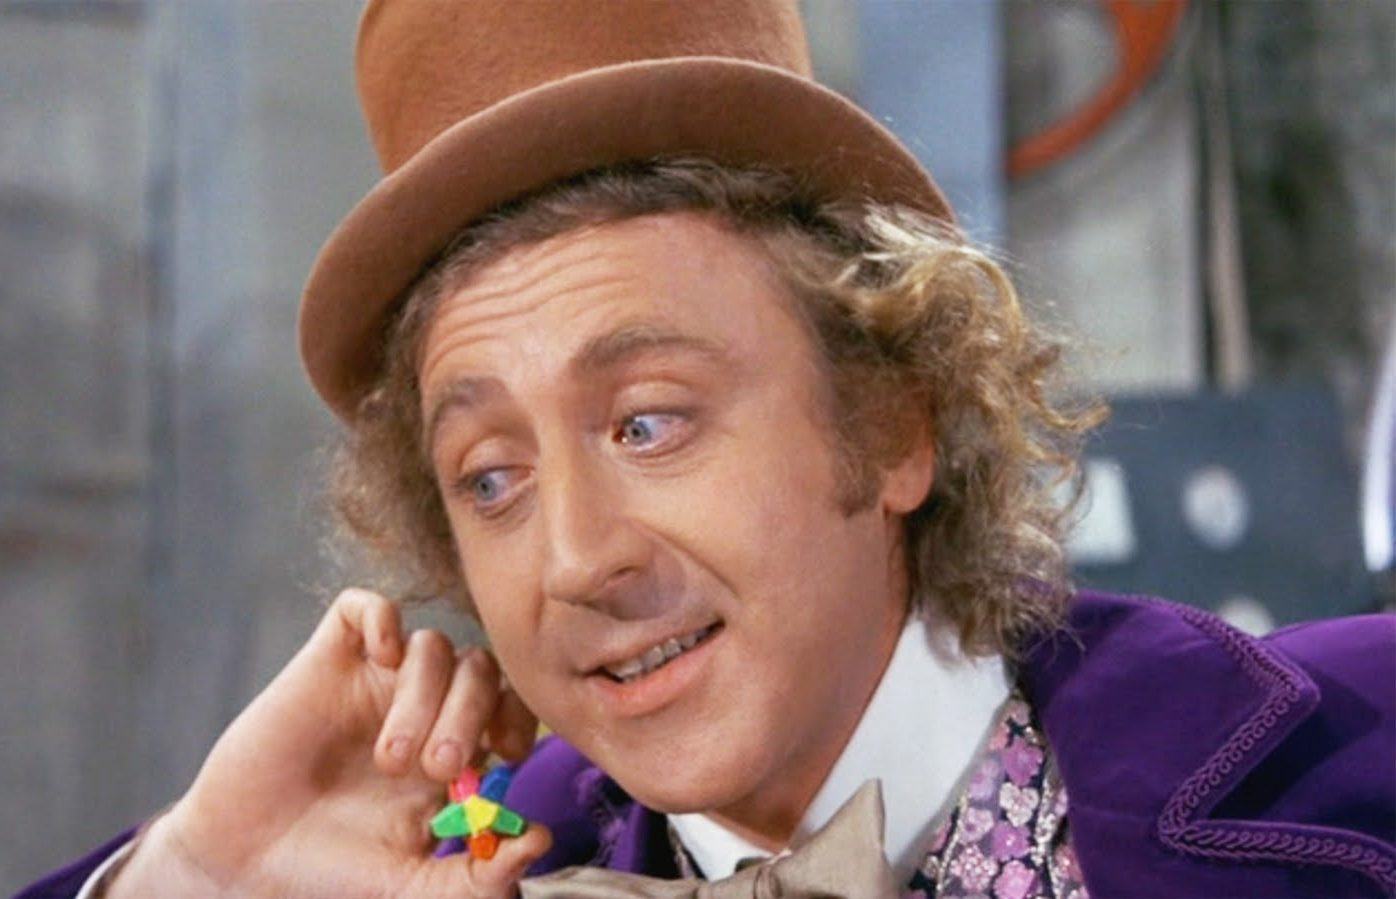 Produtor fala sobre o projeto de contar a história de origem de Willy Wonka